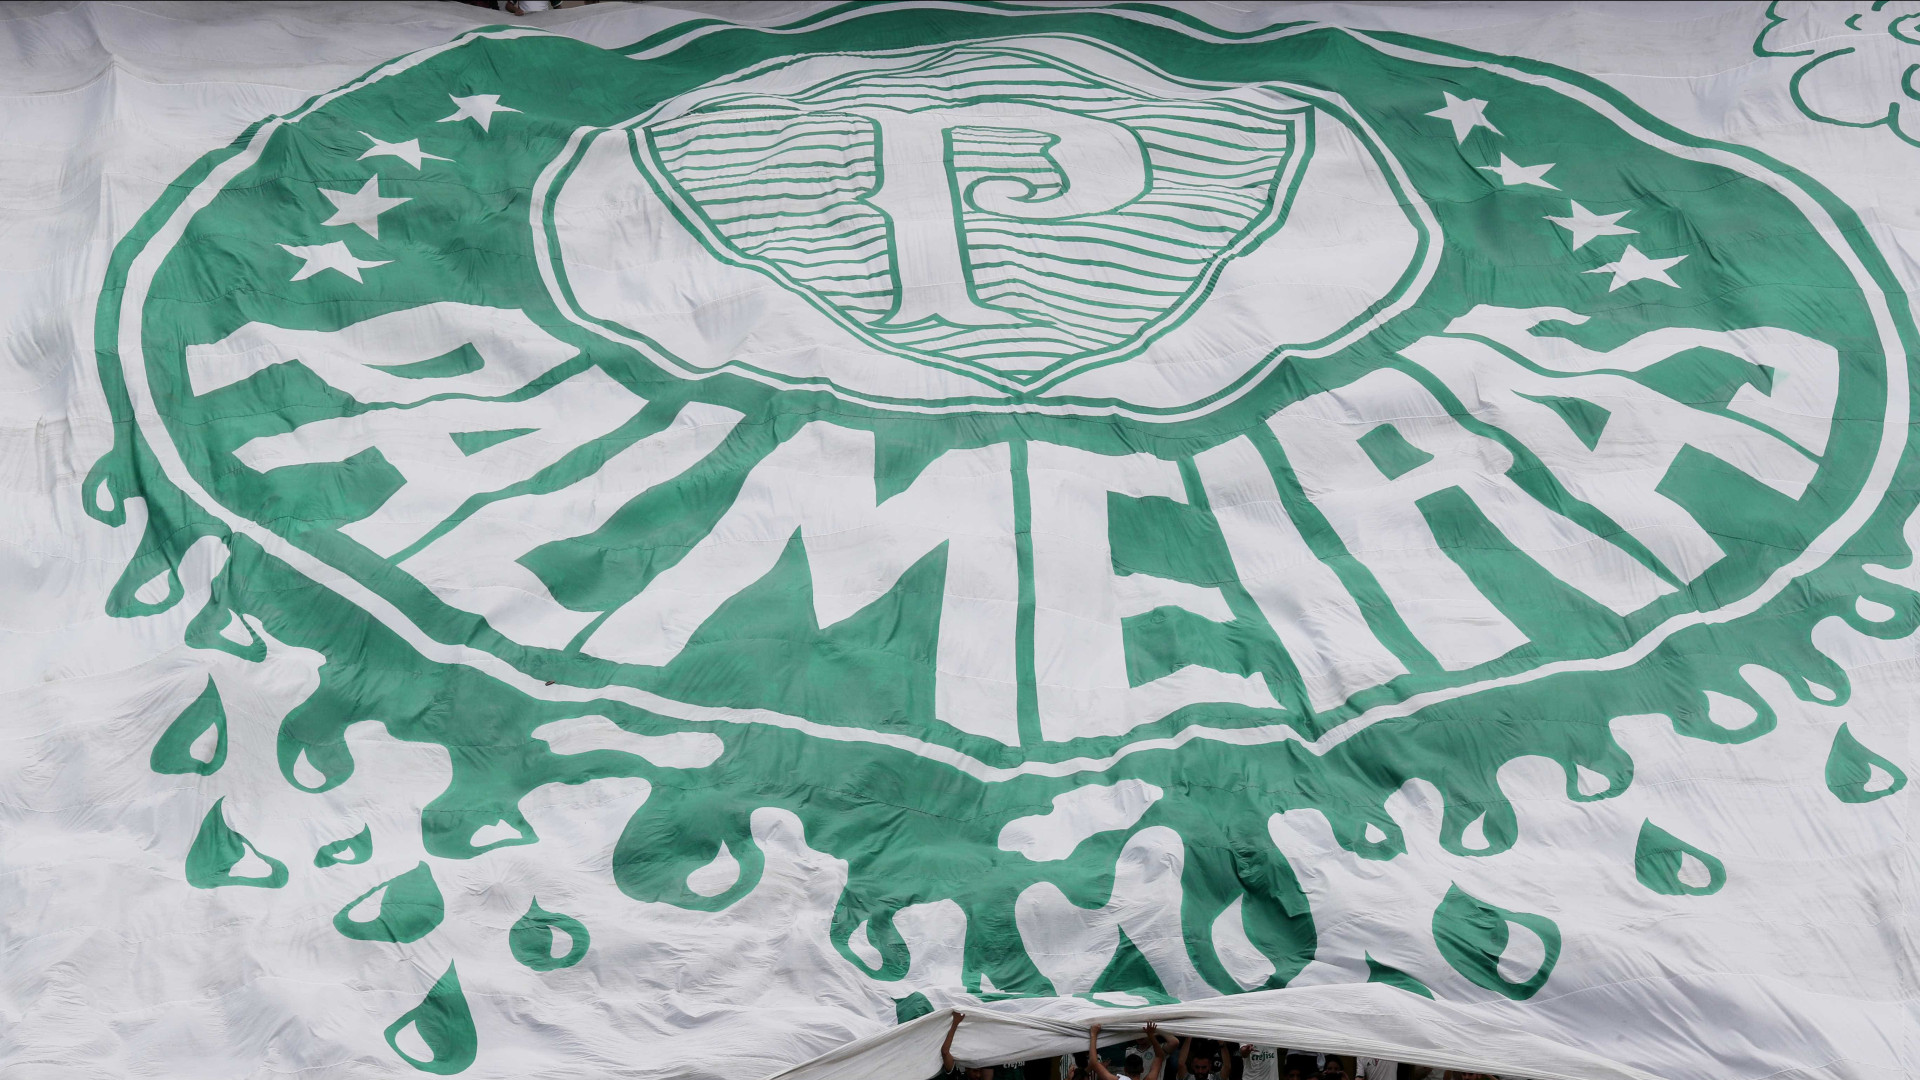 Relembre as participações do Palmeiras na final da Libertadores